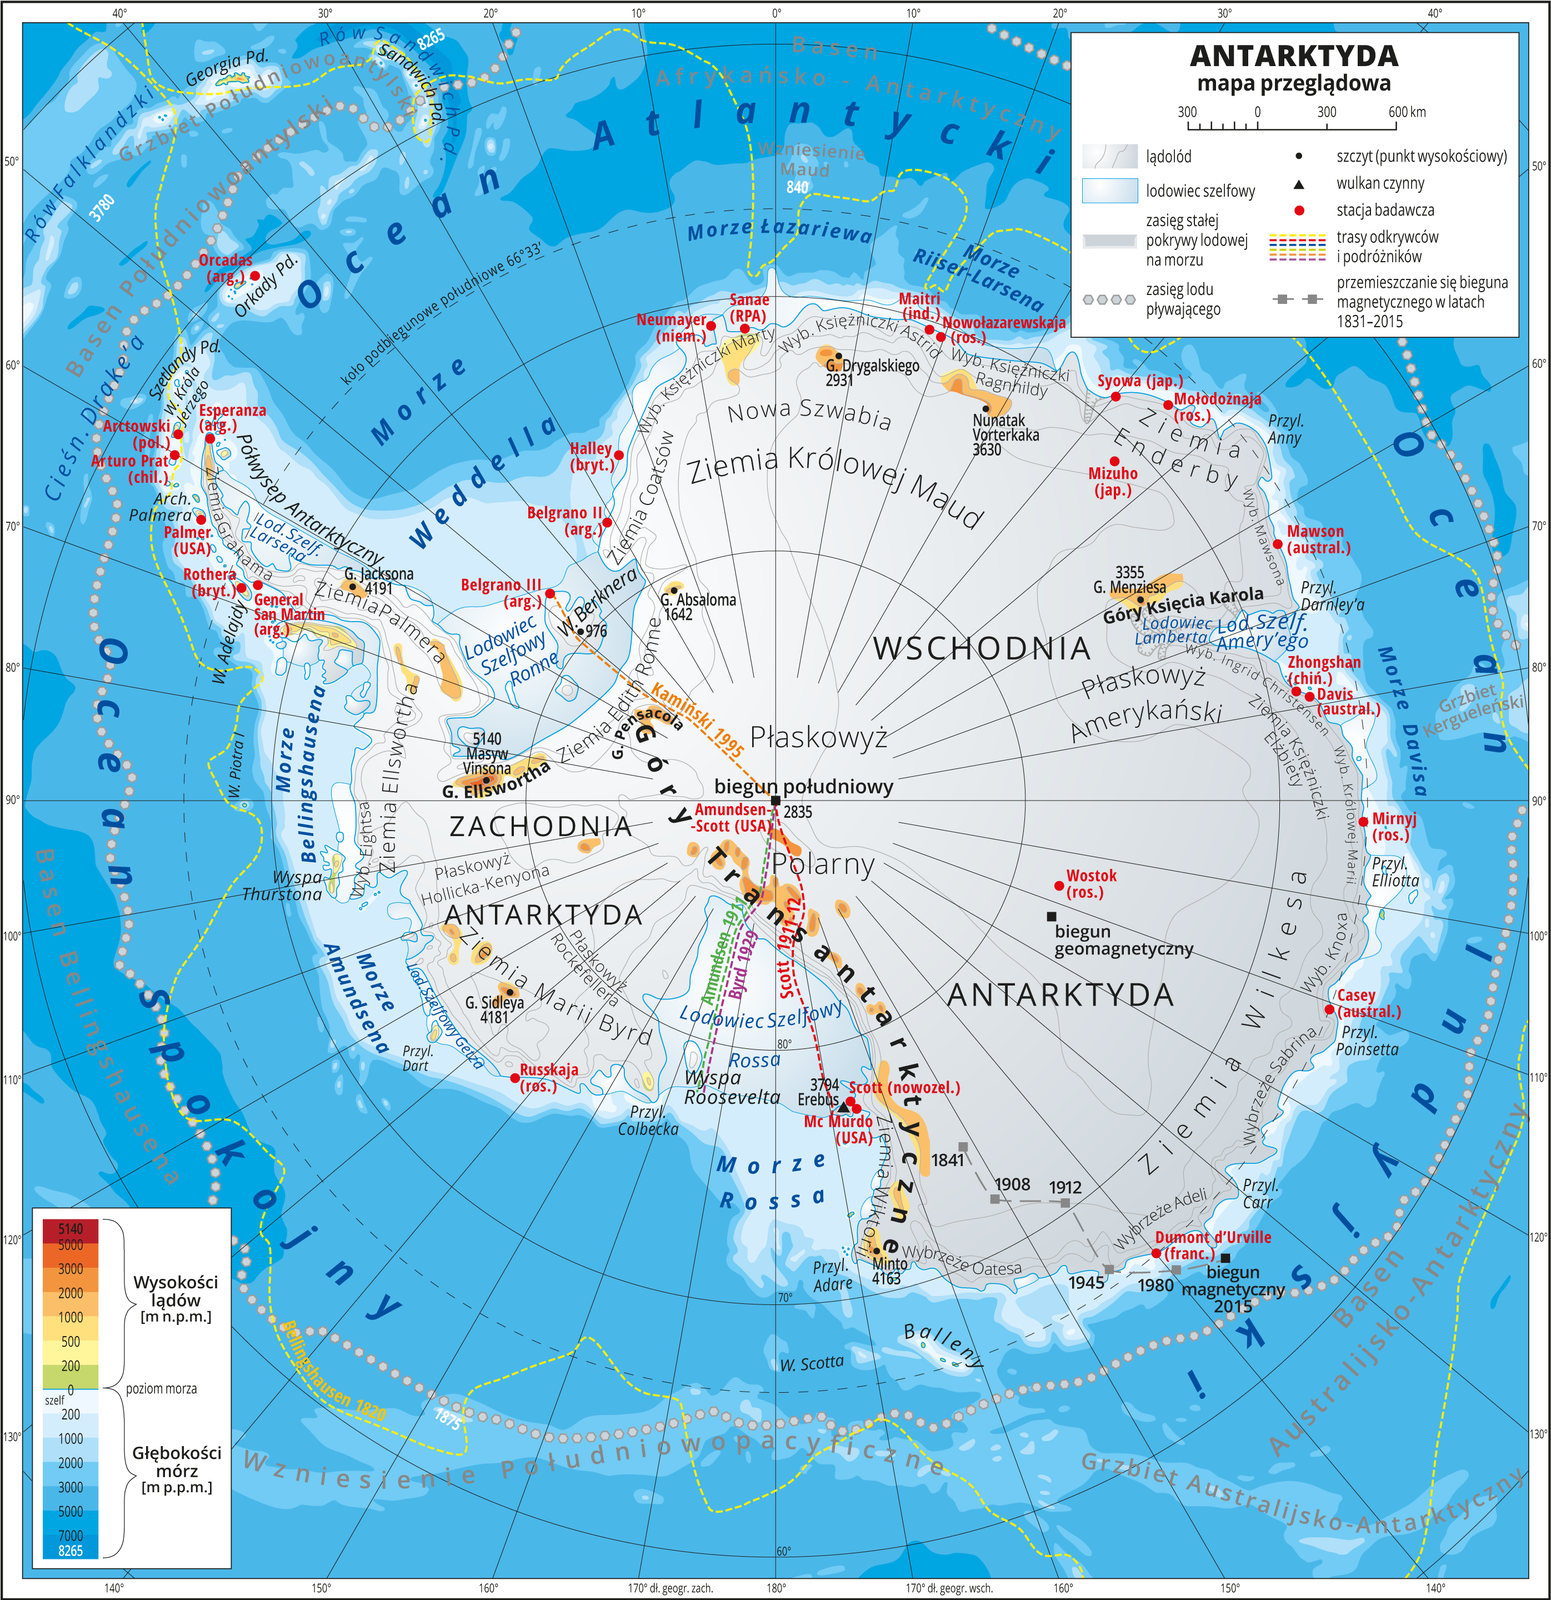 Ilustracja przedstawia mapę przeglądową Antarktydy. Cały obszar lądowy pokolorowany jest kolorem szarym co oznacza lądolód pokrywający całą powierzchnię kontynentu. Morza zaznaczono odcieniami koloru niebieskiego. Na mapie opisano nazwy krain geograficznych, lodowców, przylądków. Oznaczono czarnymi kropkami i opisano szczyty górskie. Czerwonymi kropkami przedstawiono stacje badawcze. Jest ich około trzydziestu i znajdują się gównie na wybrzeżach. Mapa pokryta jest równoleżnikami i południkami. Dookoła mapy w białej ramce opisano współrzędne geograficzne co dziesięć stopni. W legendzie umieszczono i opisano znaki użyte na mapie.